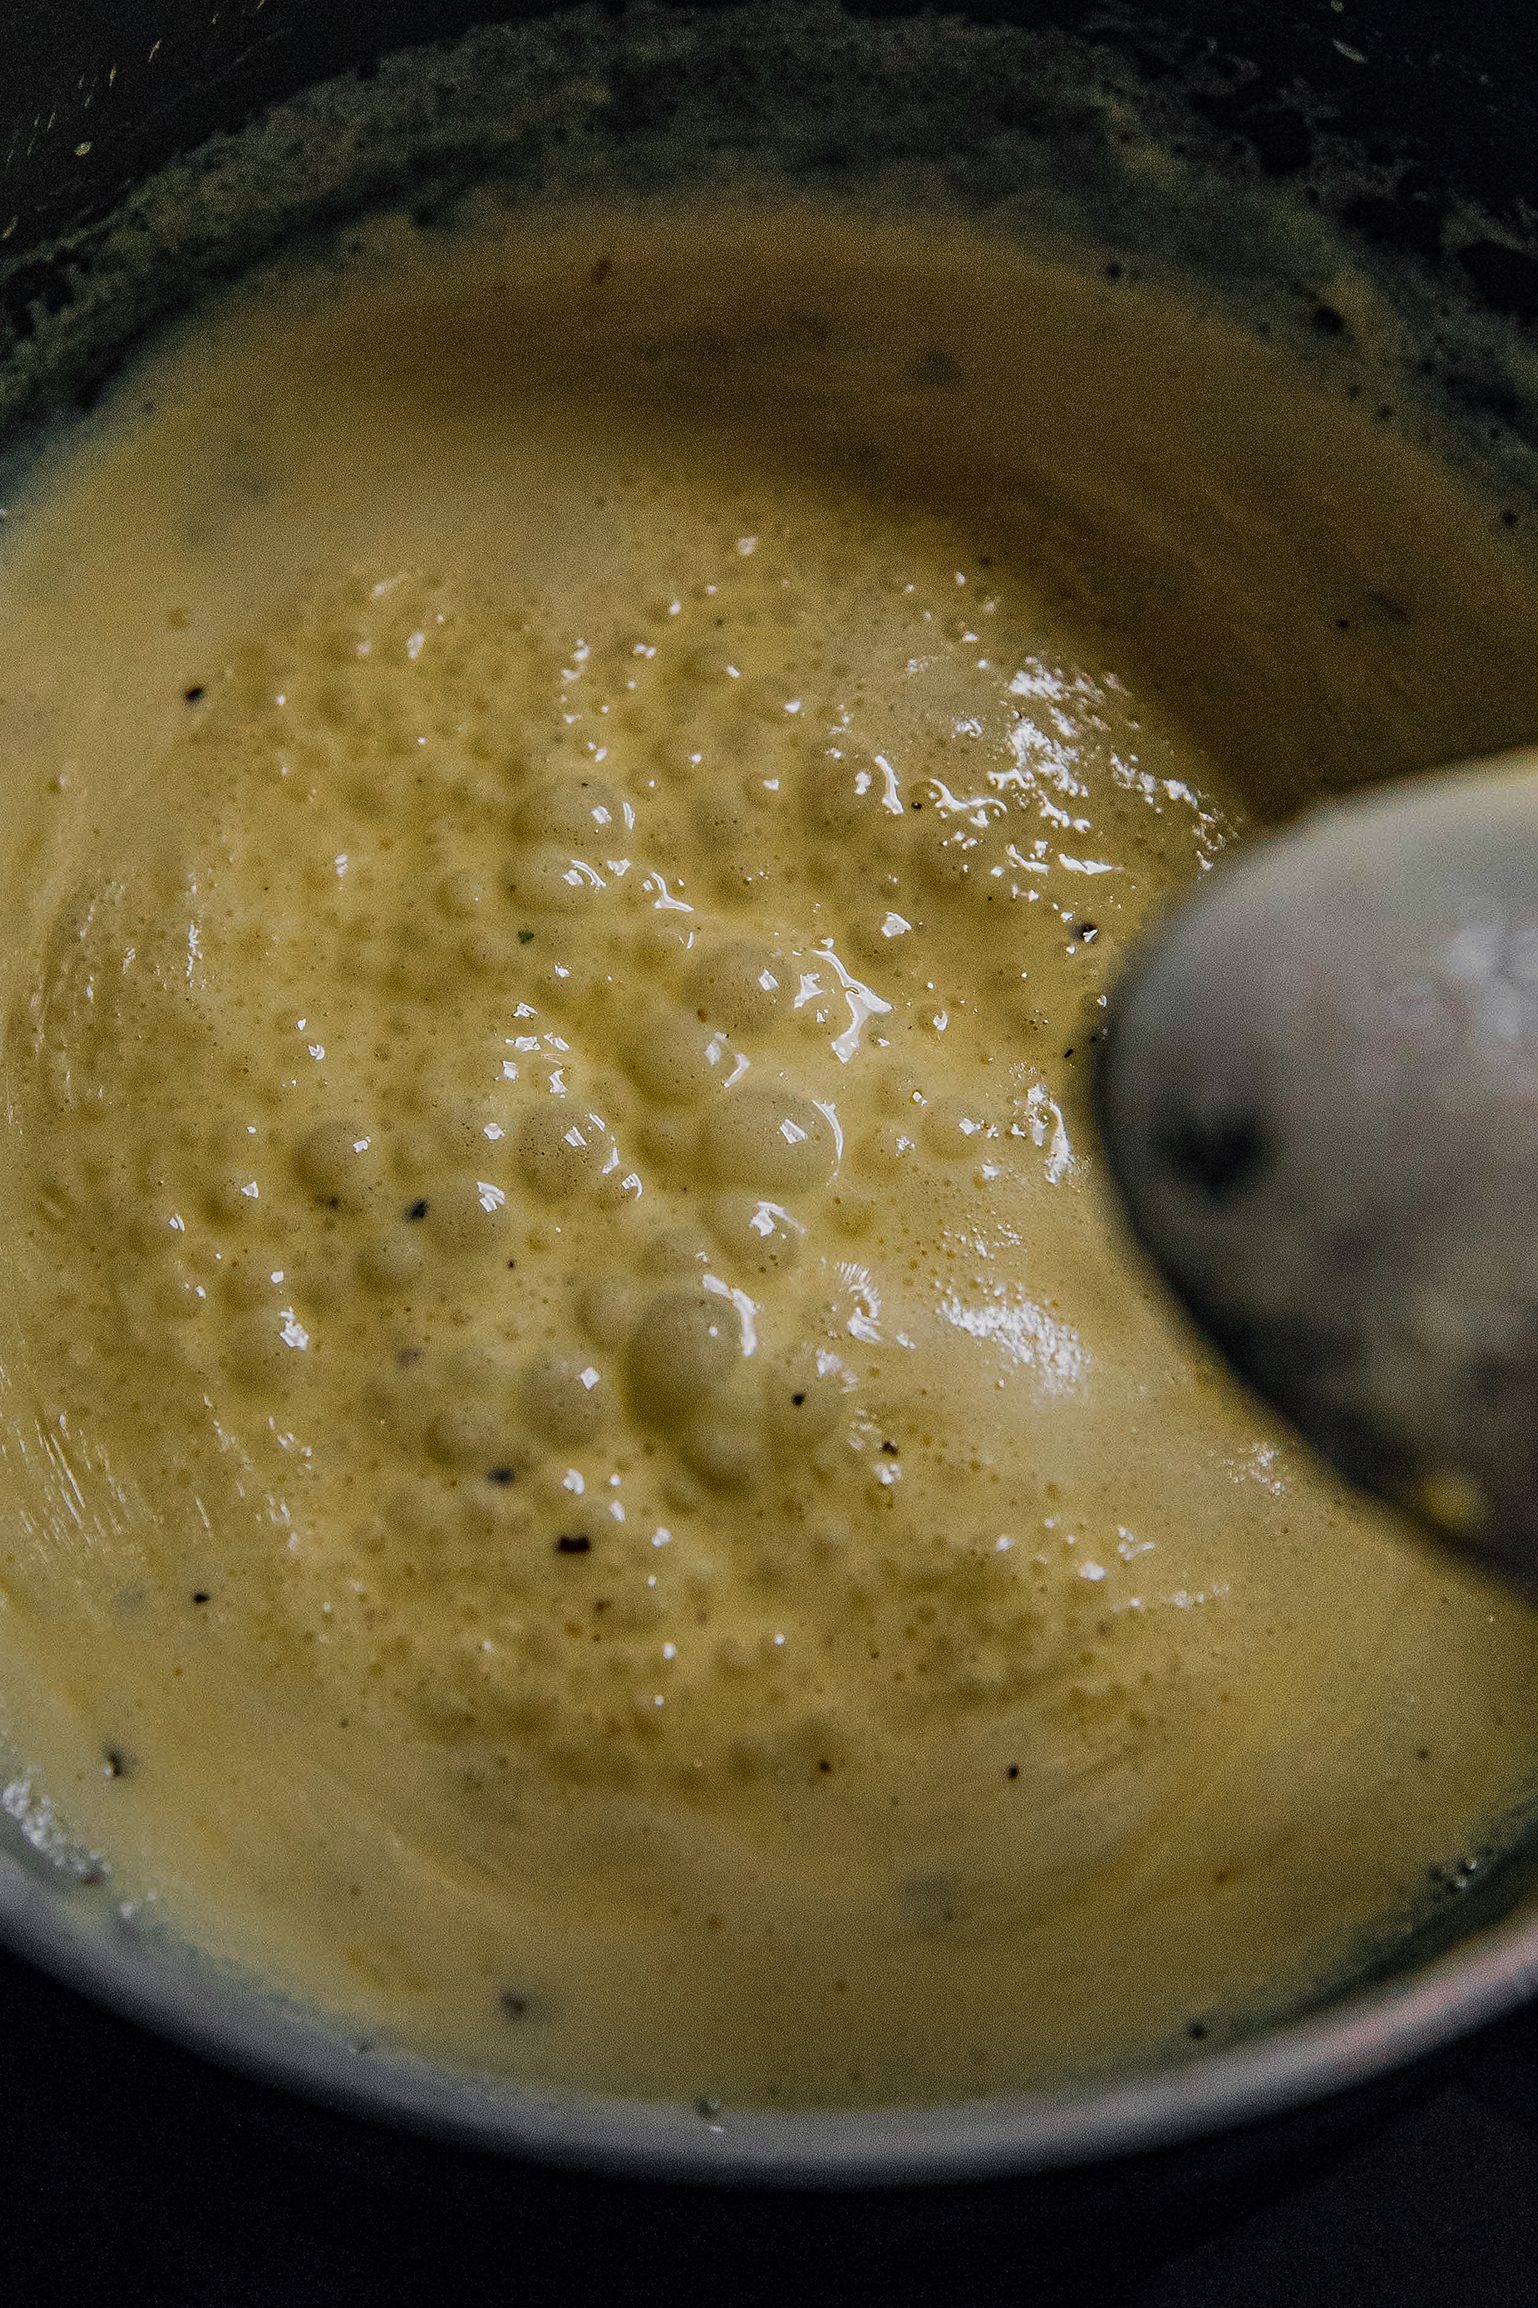 Over medium-high heat, melt butter in the saucepan.